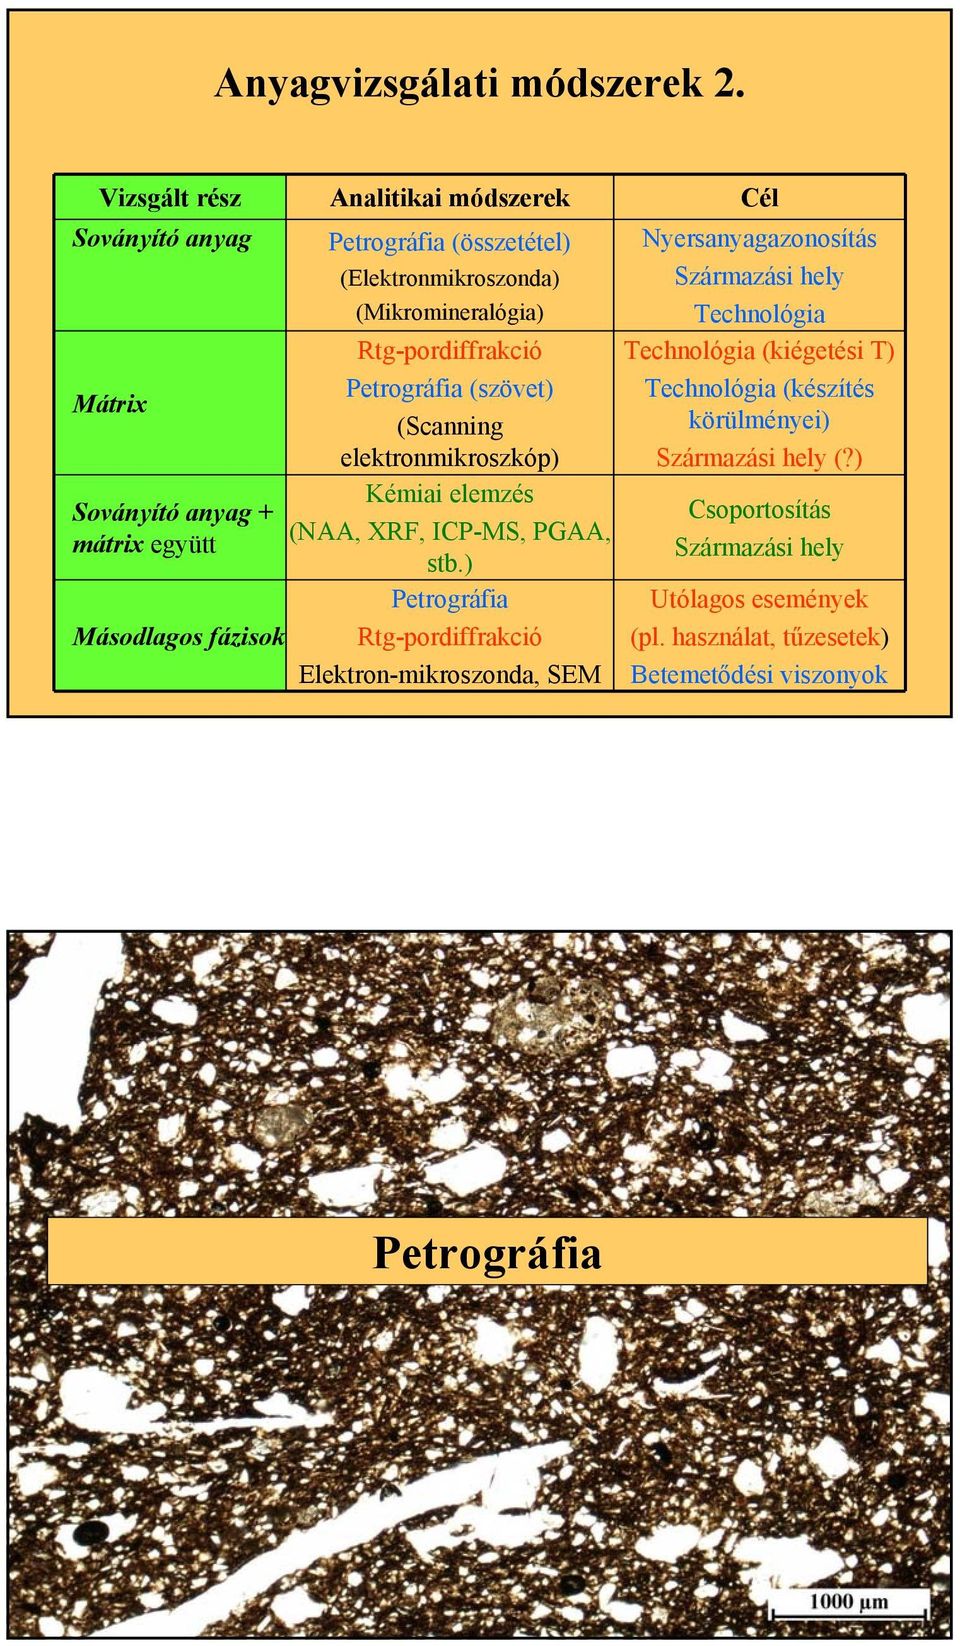 (Elektronmikroszonda) (Mikromineralógia) Rtg-pordiffrakció Petrográfia (szövet) (Scanning elektronmikroszkóp) Kémiai elemzés (NAA, XRF, ICP-MS, PGAA, stb.